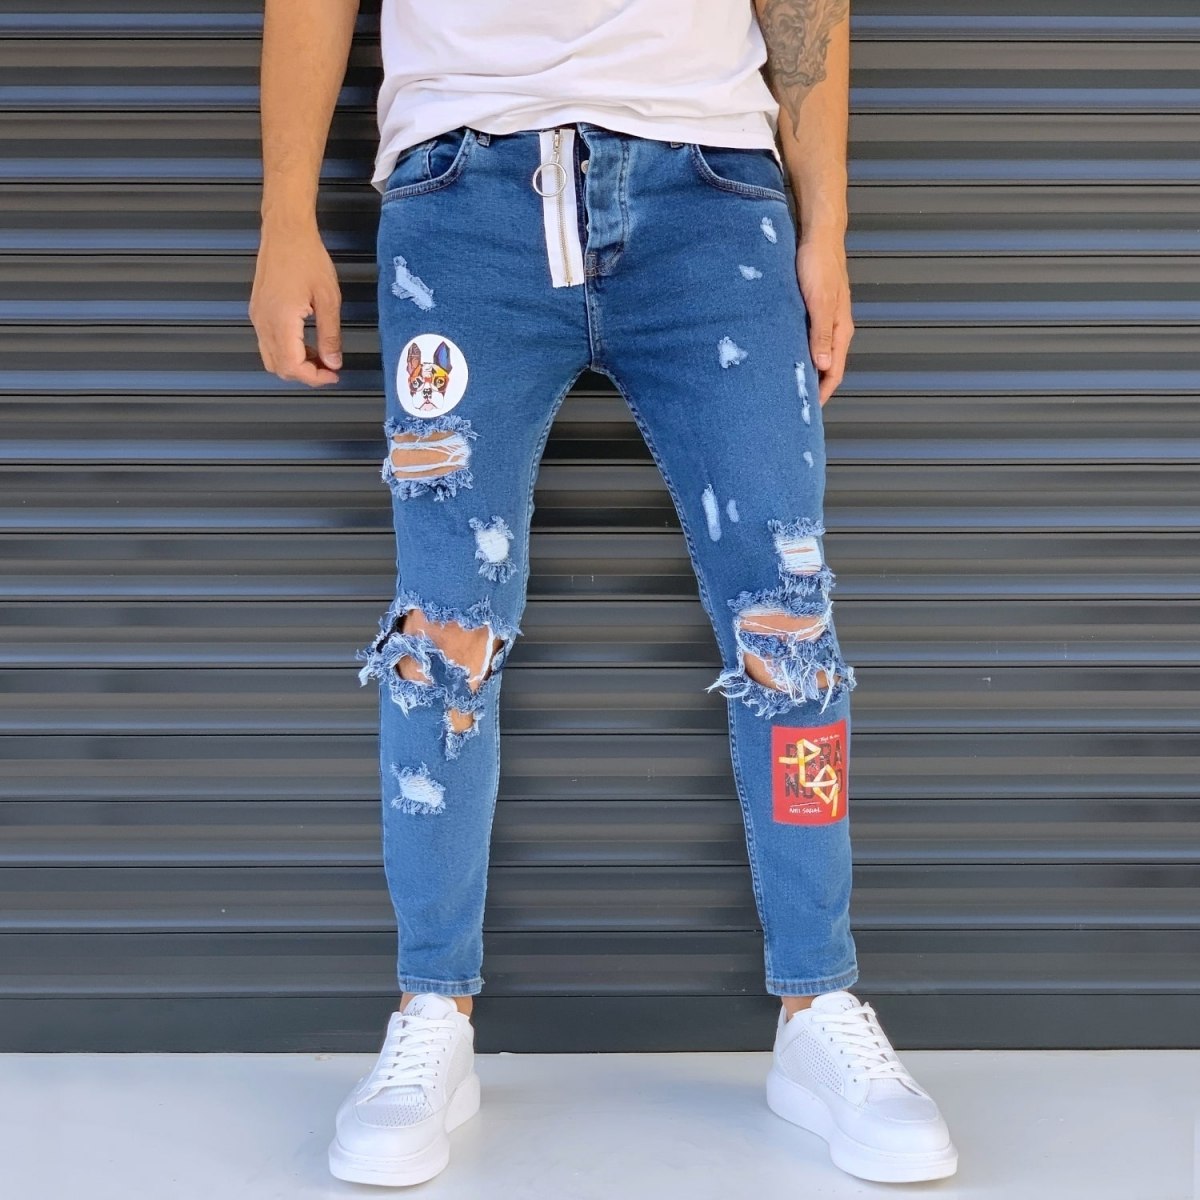 Herren Jeans mit großen Rissen und Flickwerk in blau - 1